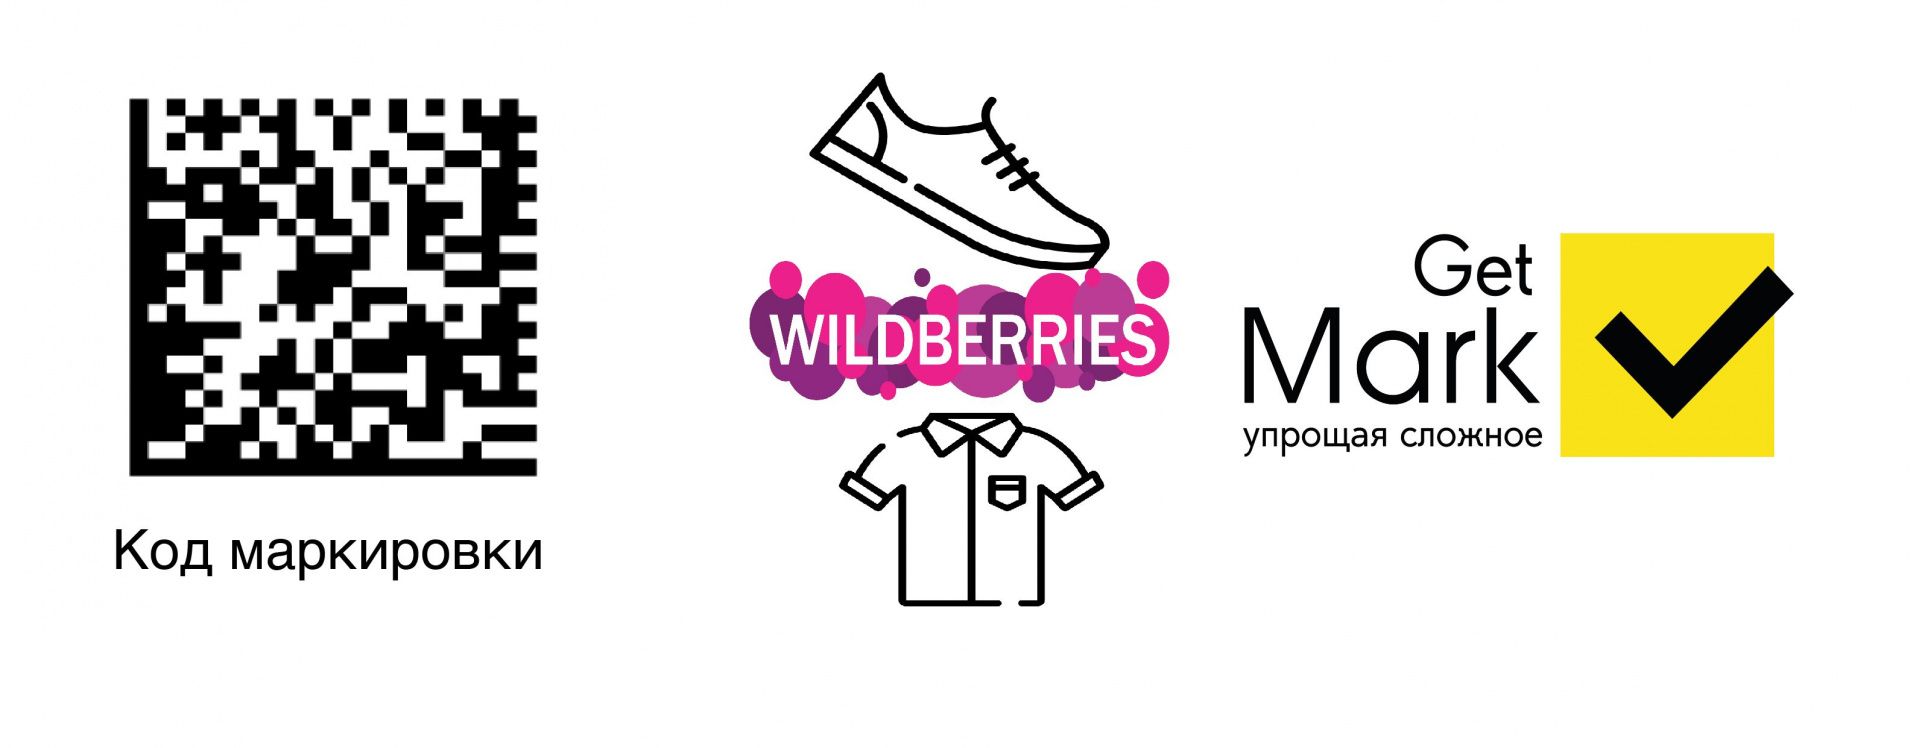 Маркировка одежды и обуви для Wildberries